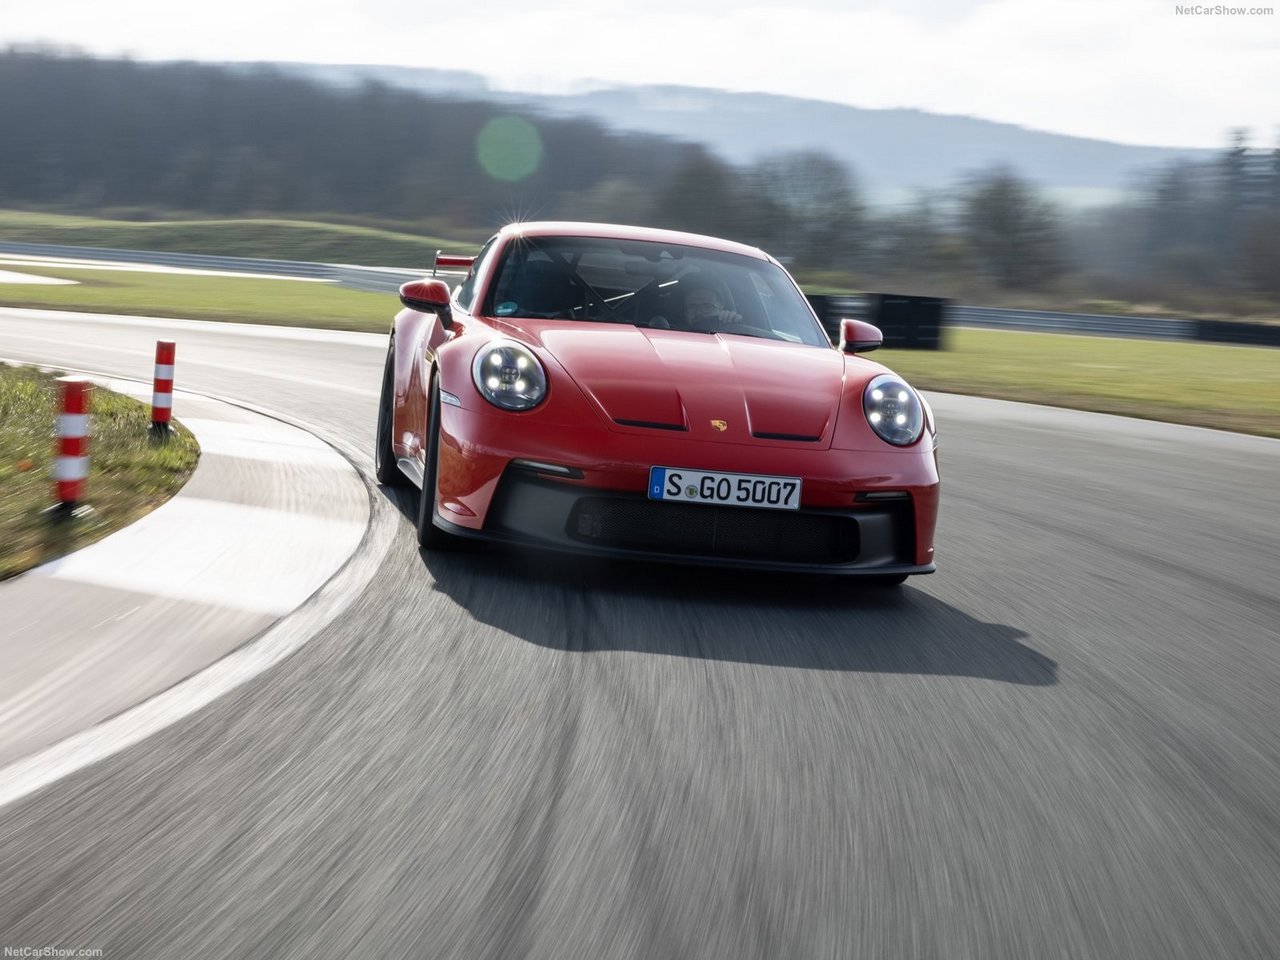 The new Porsche 911 GT3